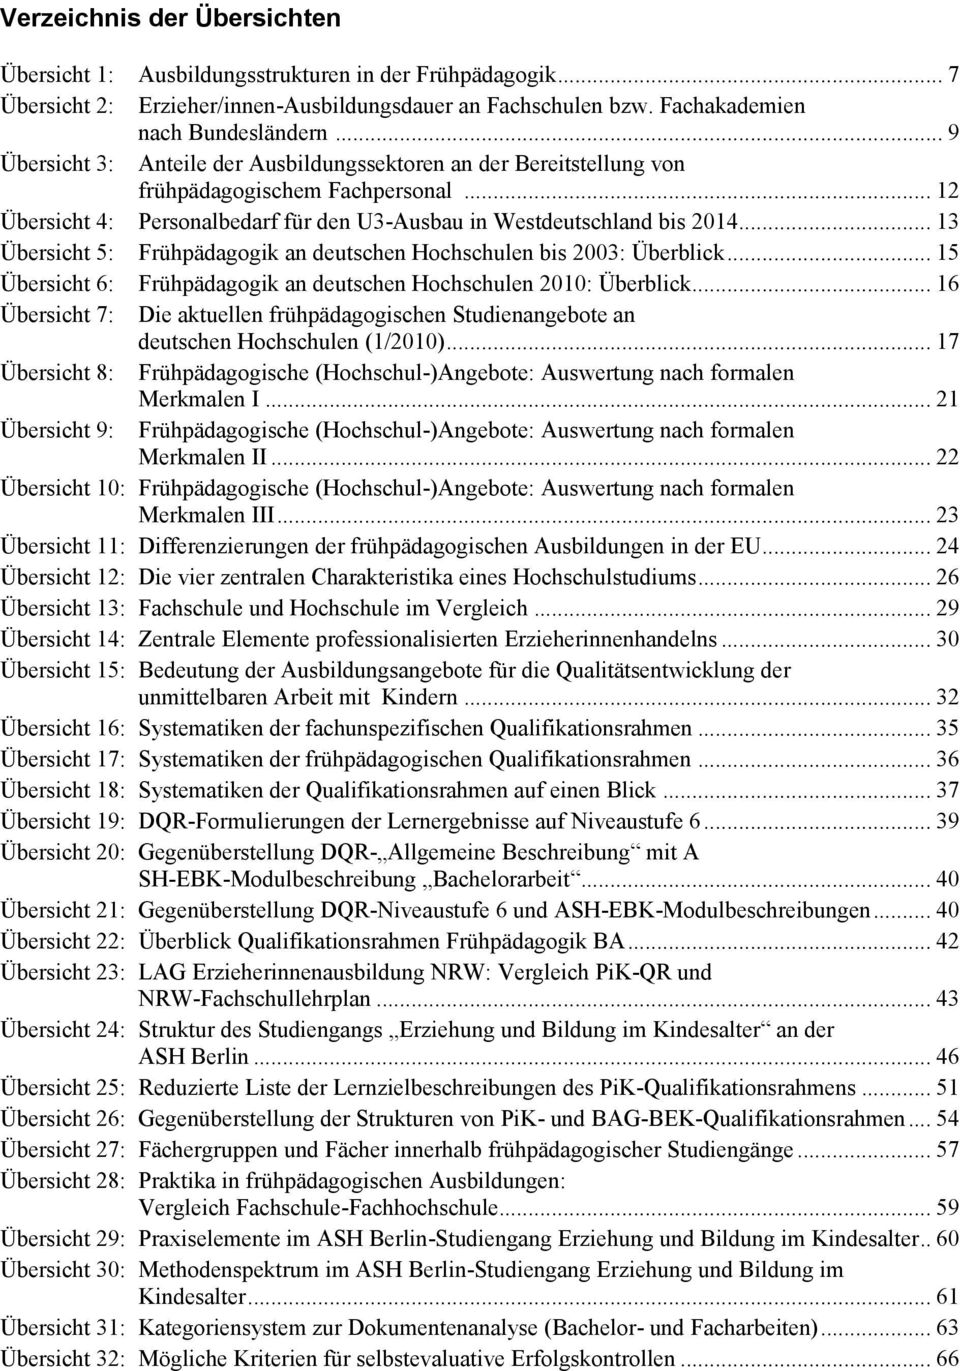 .. 13 Übersicht 5: Frühpädagogik an deutschen Hochschulen bis 2003: Überblick... 15 Übersicht 6: Frühpädagogik an deutschen Hochschulen 2010: Überblick.